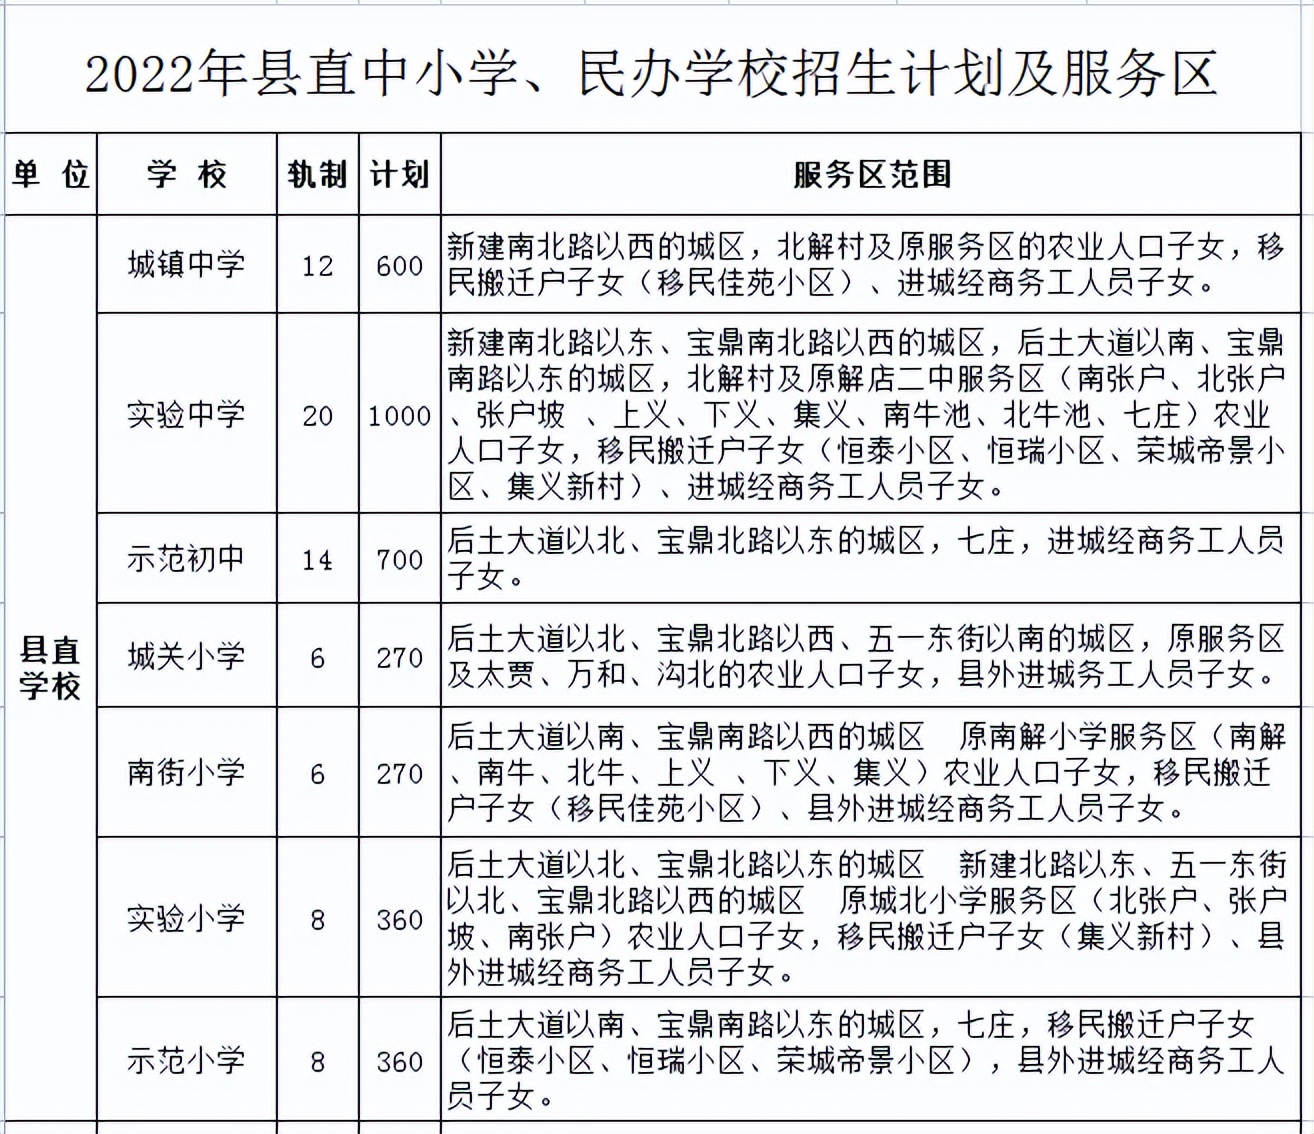 万荣县教育局关于做好2022年普通中小学招生入学工作的通知